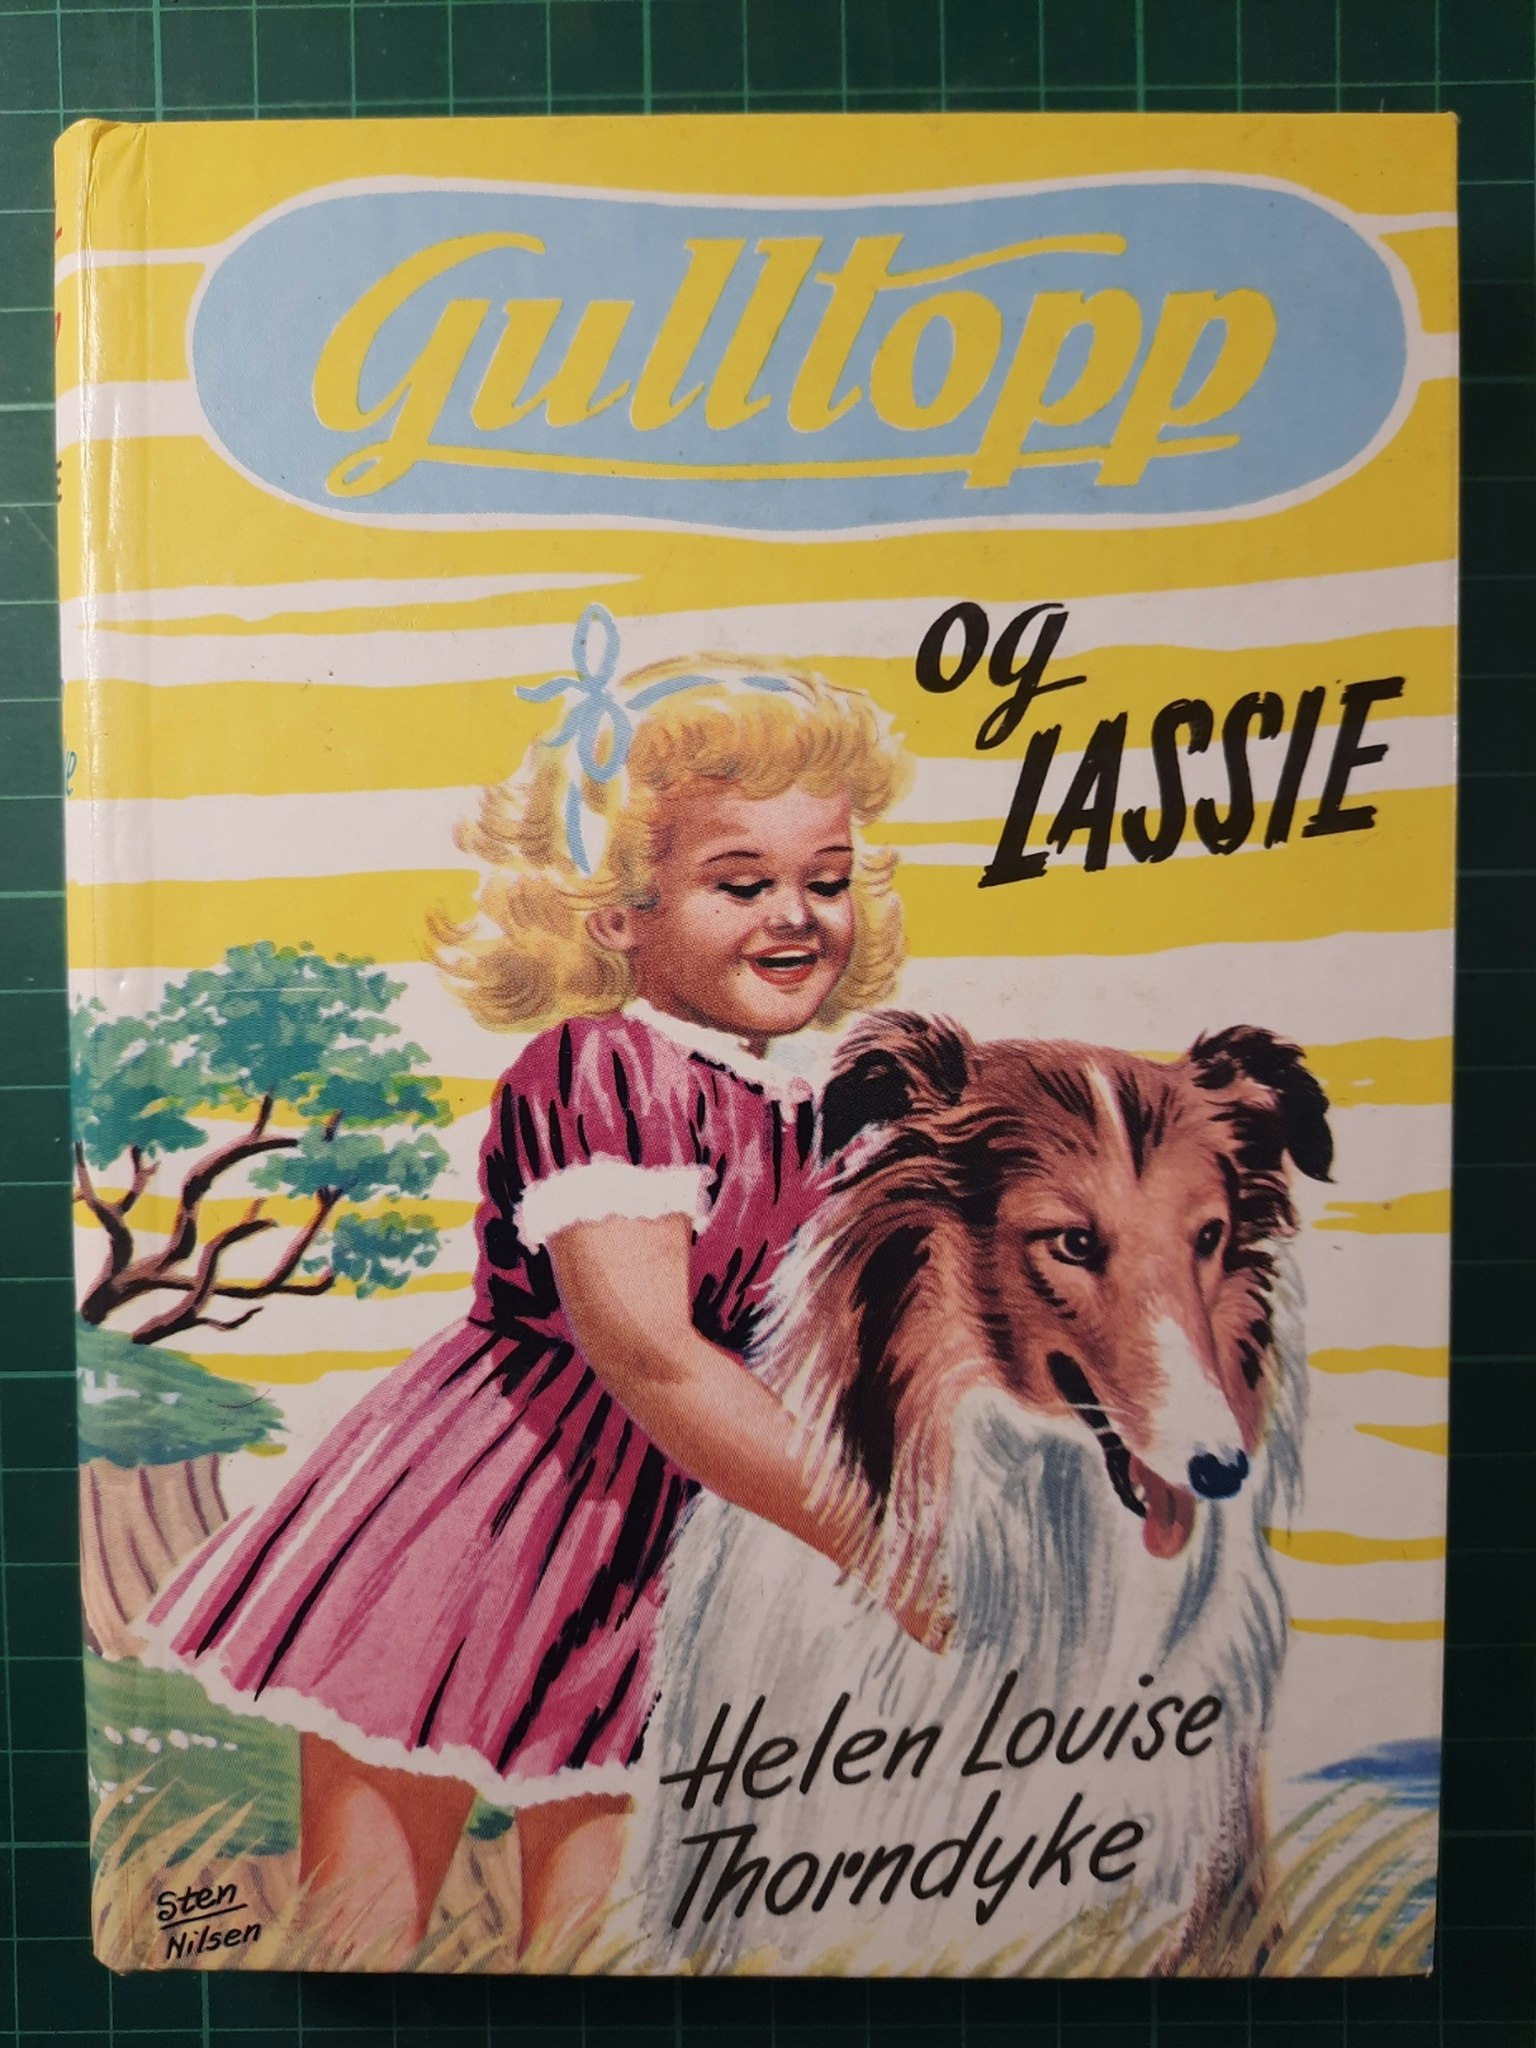 Gulltopp 07 og Lassie